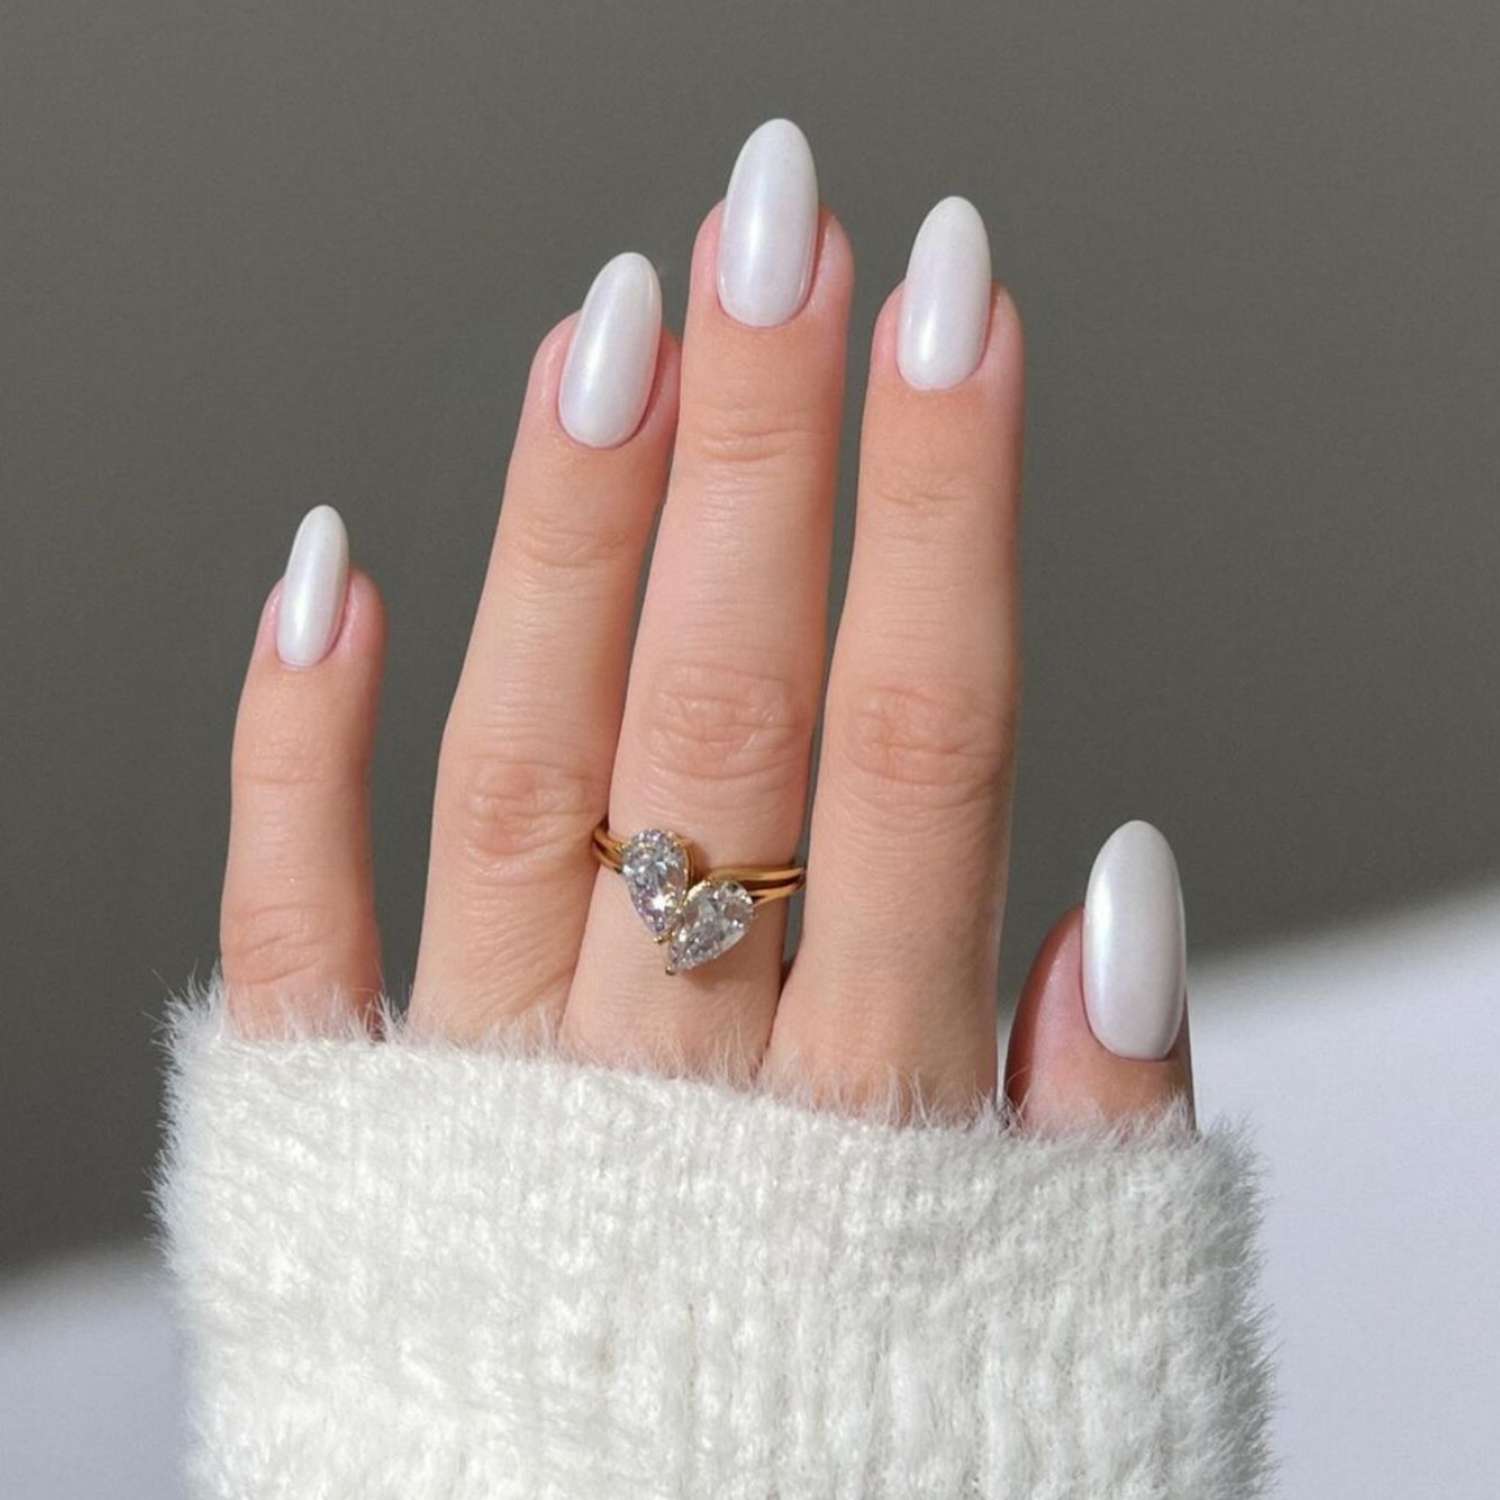 Fecha r-Up Manicure branca perolada no braço com um anel na forma de um coração de diamante